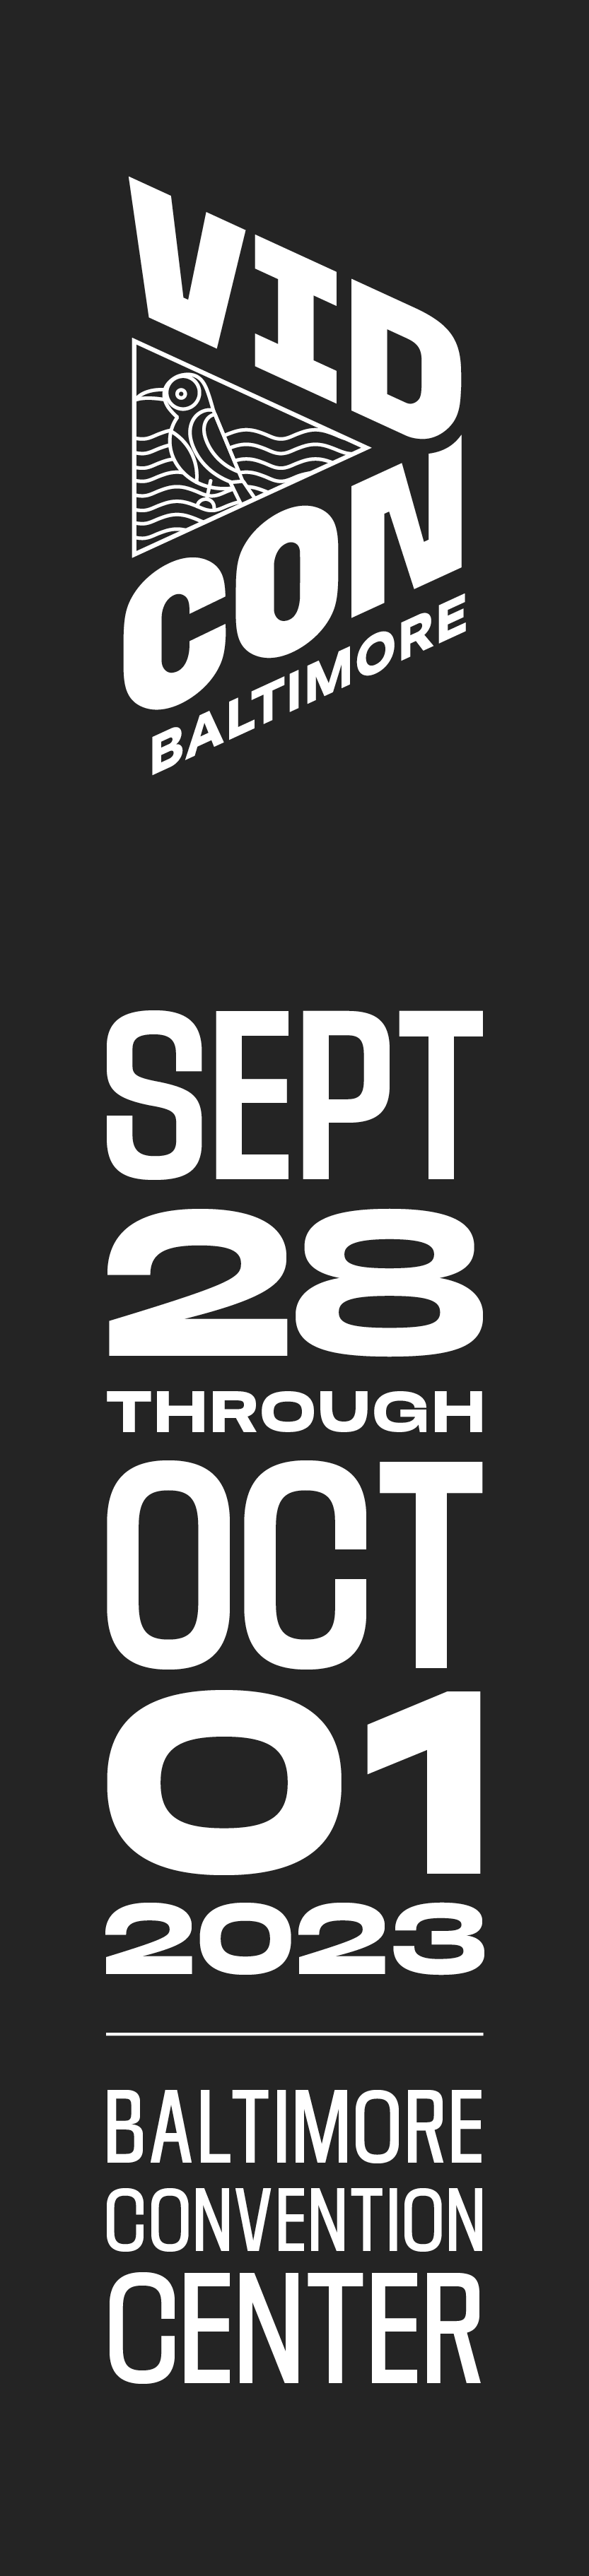 VidCon Baltimore - Sept. 28 through Oct. 1, 2023 - Baltimore Convention Center